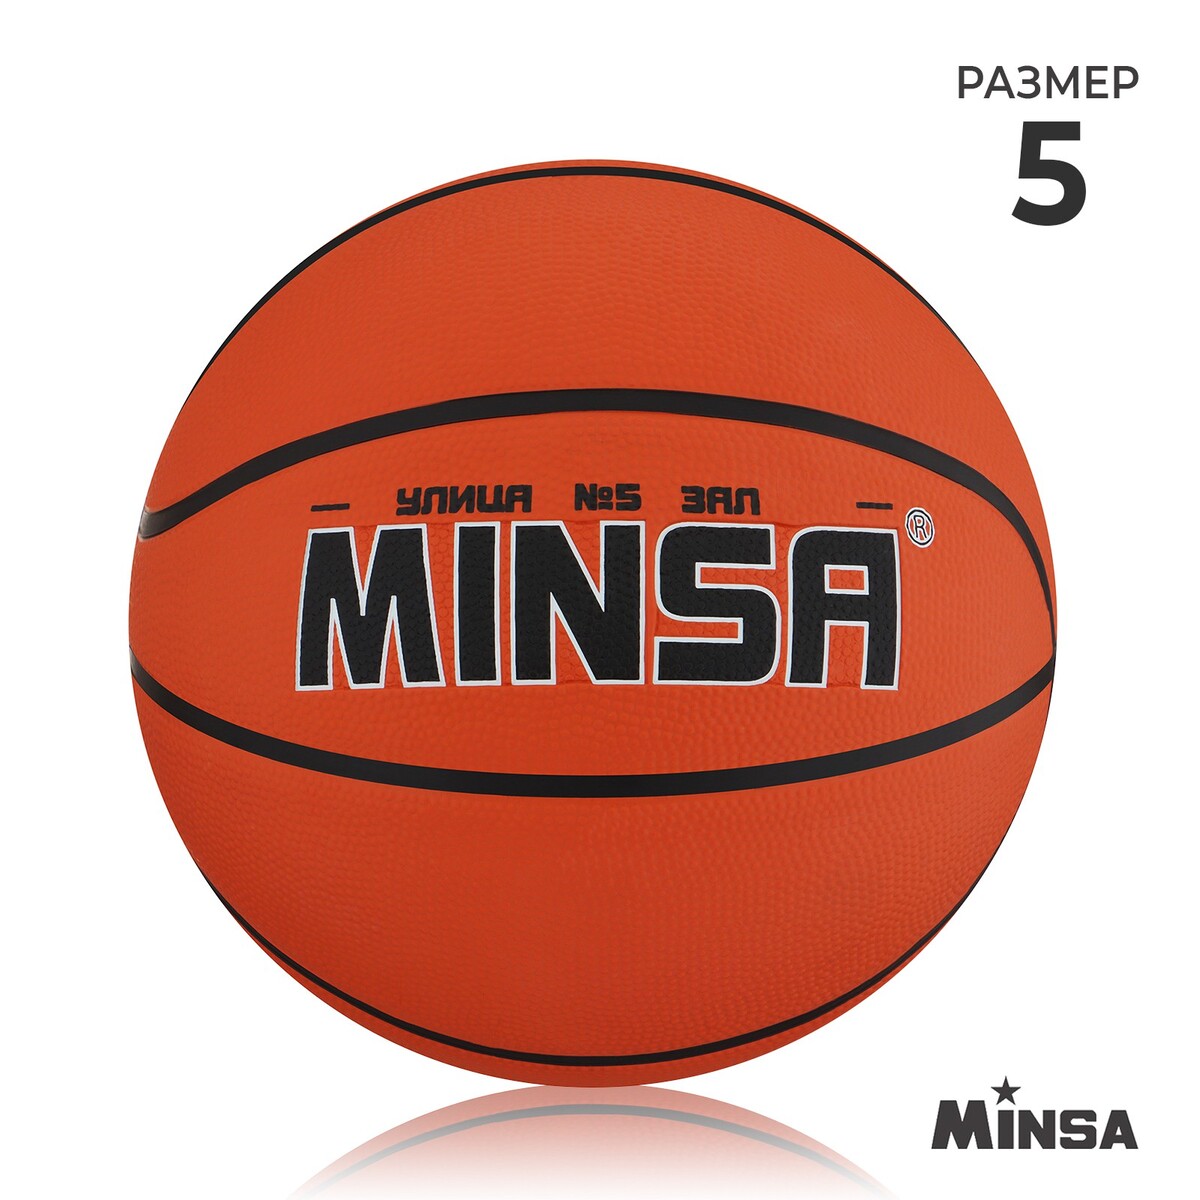 Мяч баскетбольный minsa, пвх, клееный, 8 панелей, р. 5 мяч баскетбольный minsa пвх клееный 8 панелей р 5